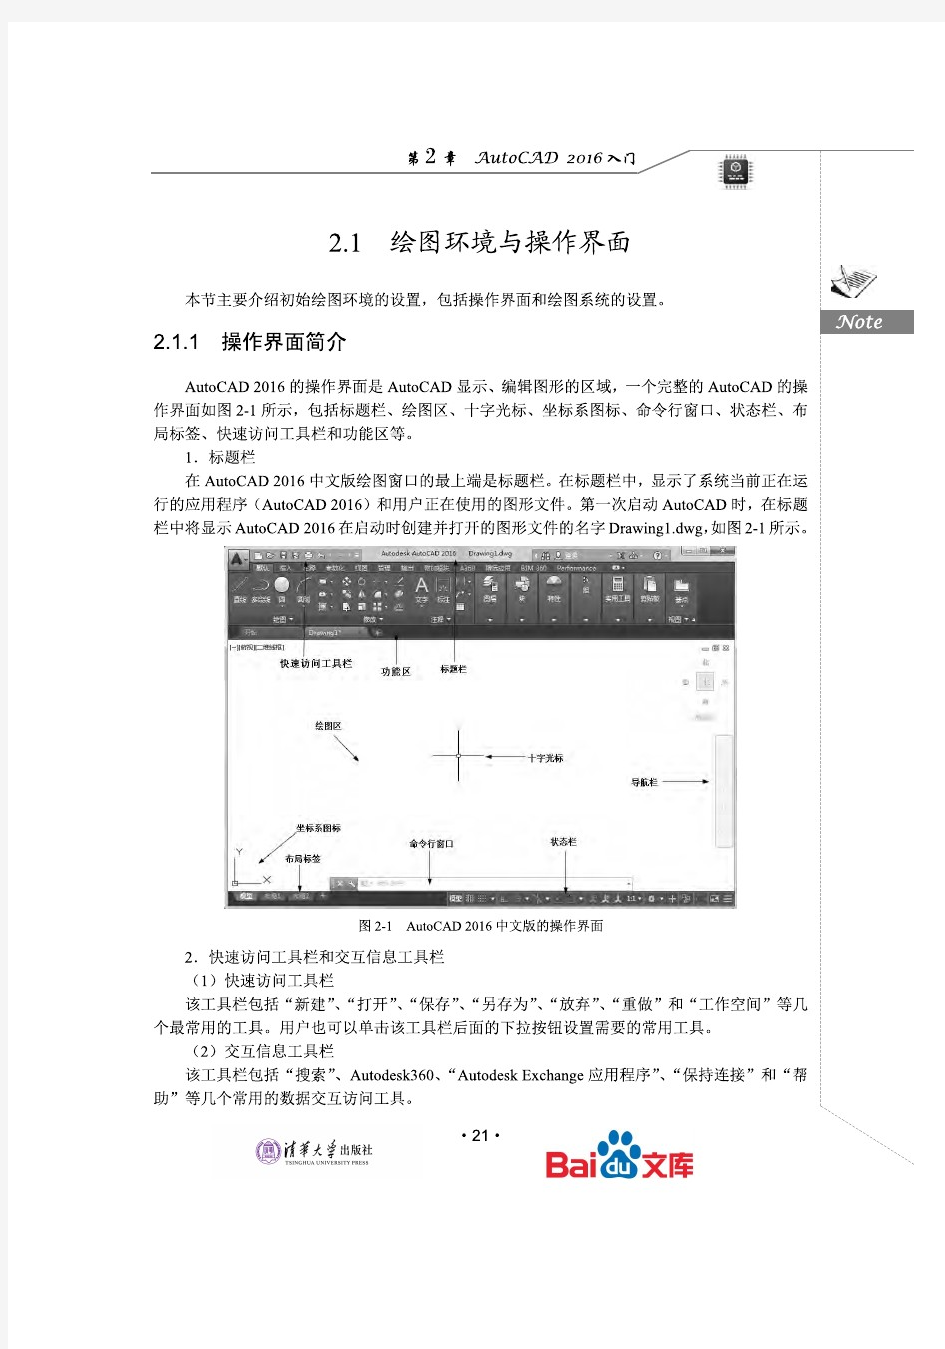 AutoCAD2016中文版电气设计自学视频教程第一篇基础知识篇第二章AutoCAD2016入门